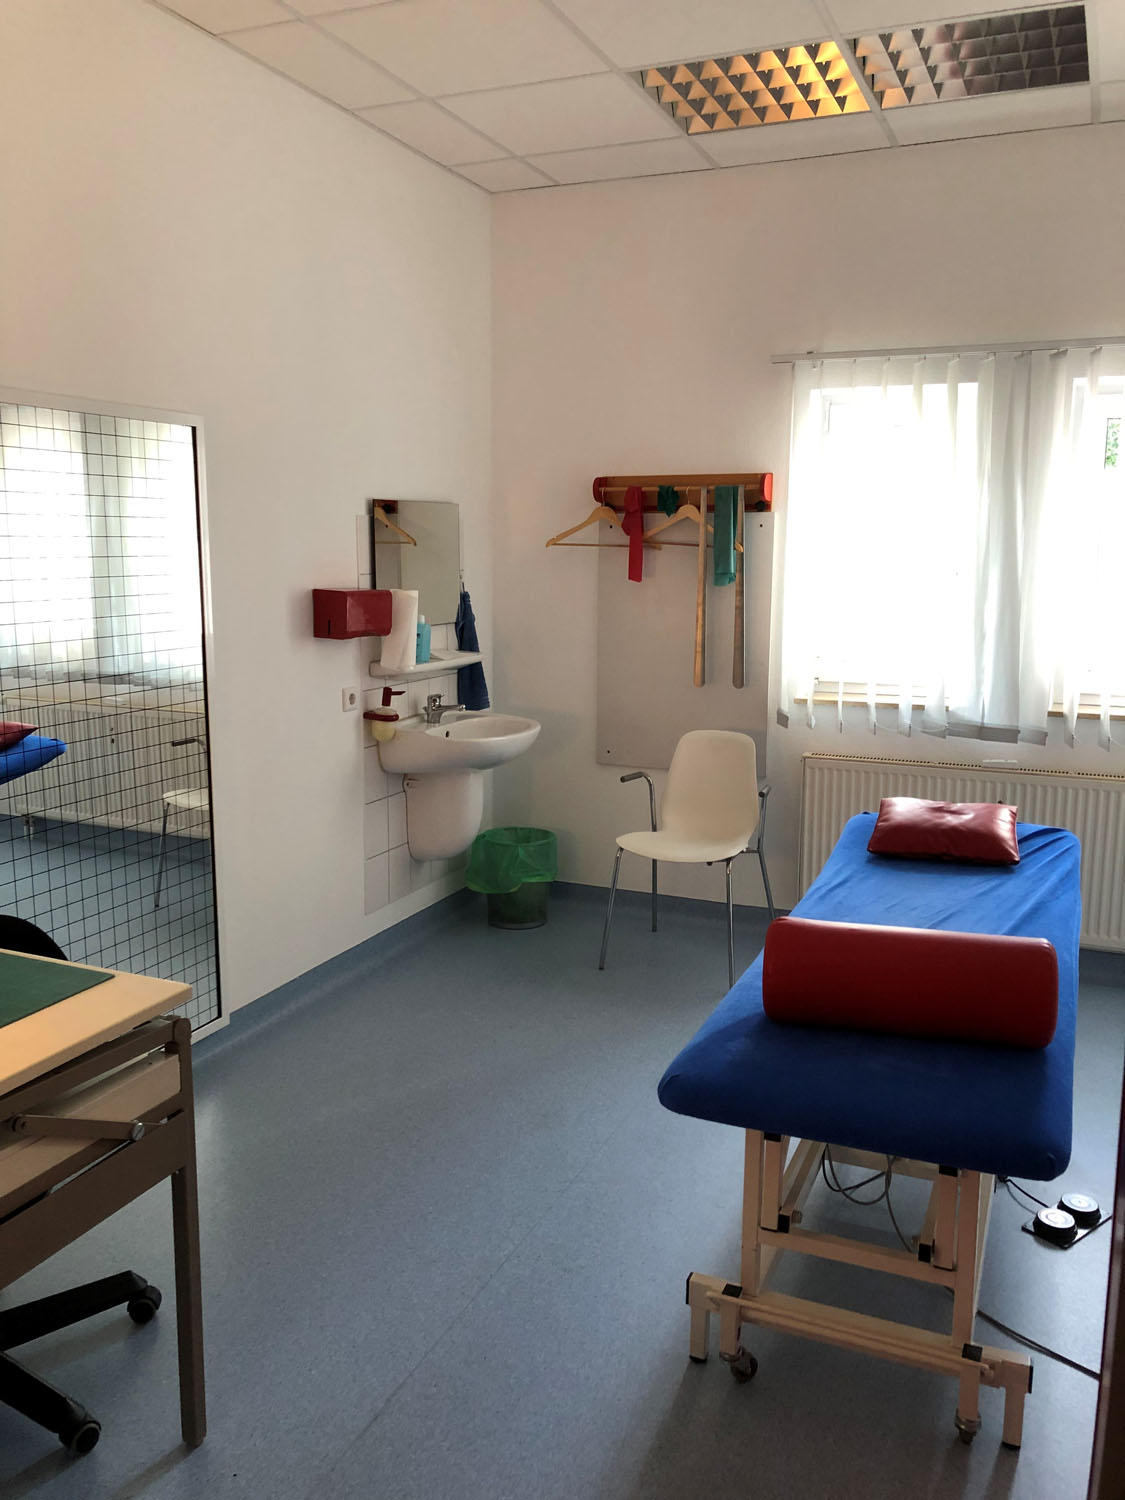 Bilder REHA-ZENTRUM Praxis für Ambulante Rehabilitation Siegfried Peter Braun